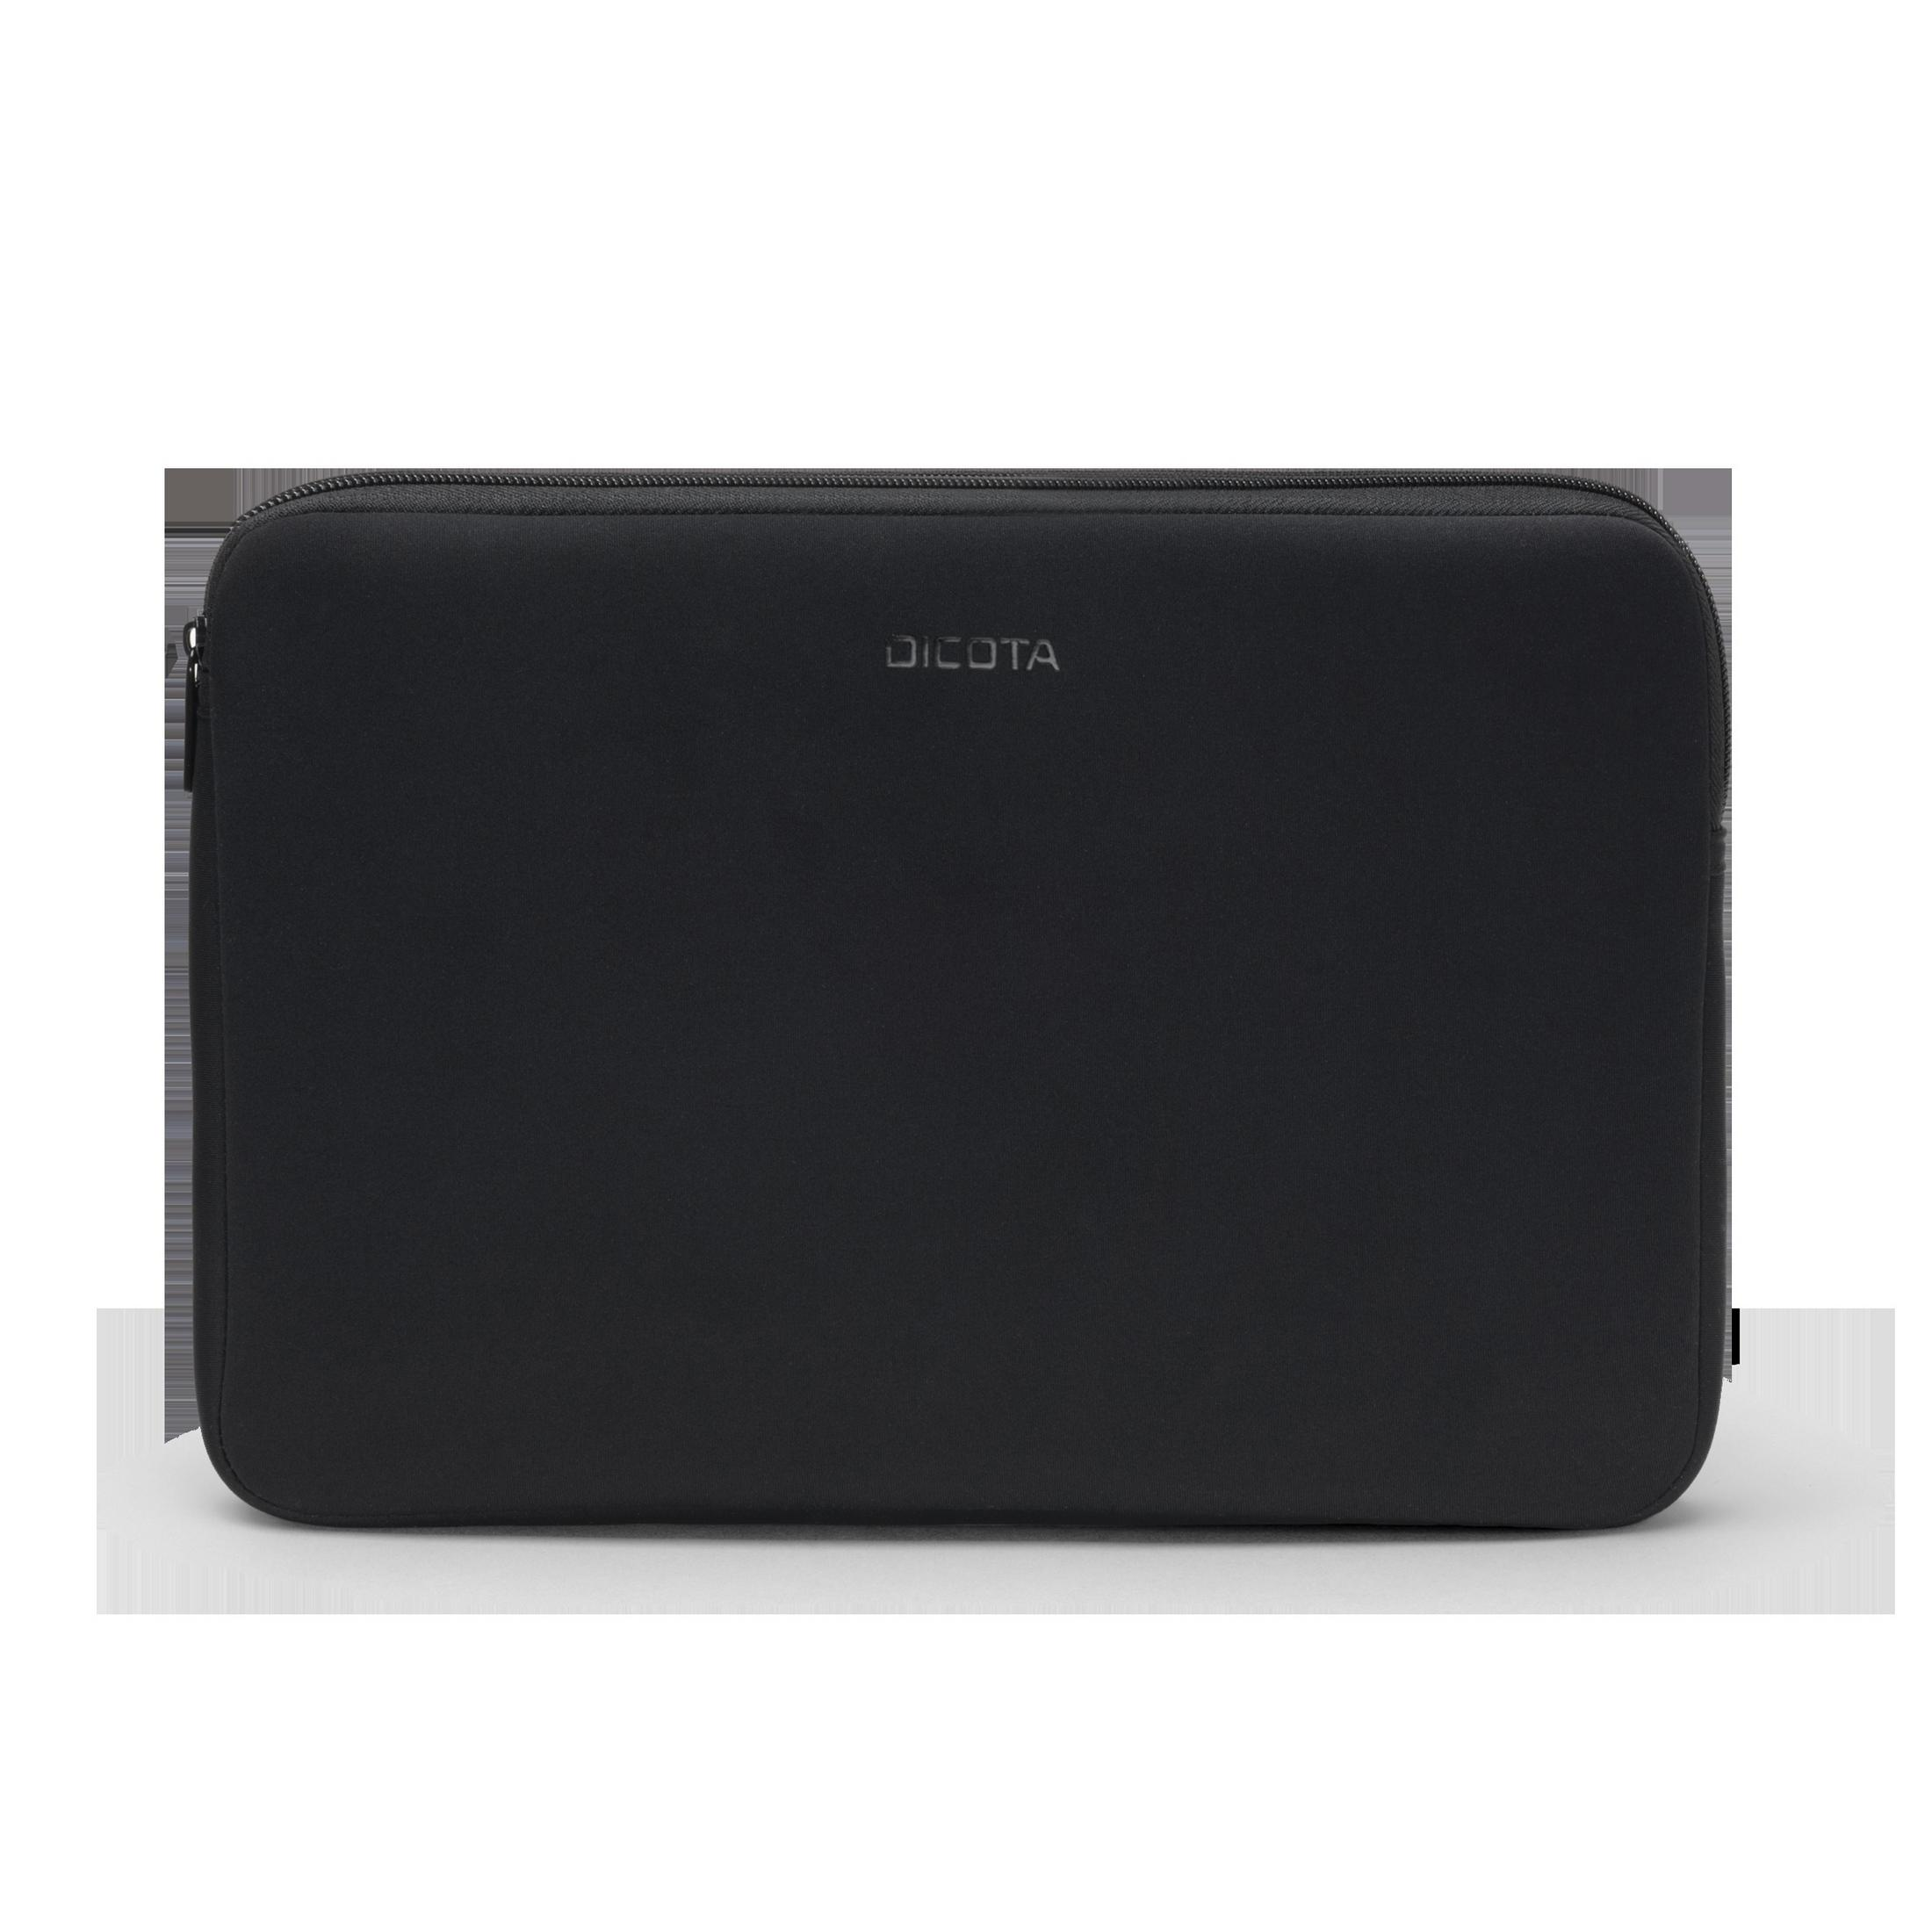 Neopren, D31189 BLACK PERFECT Schwarz SKIN DICOTA Universal 16-17.3 Sleeve Notebooktasche für